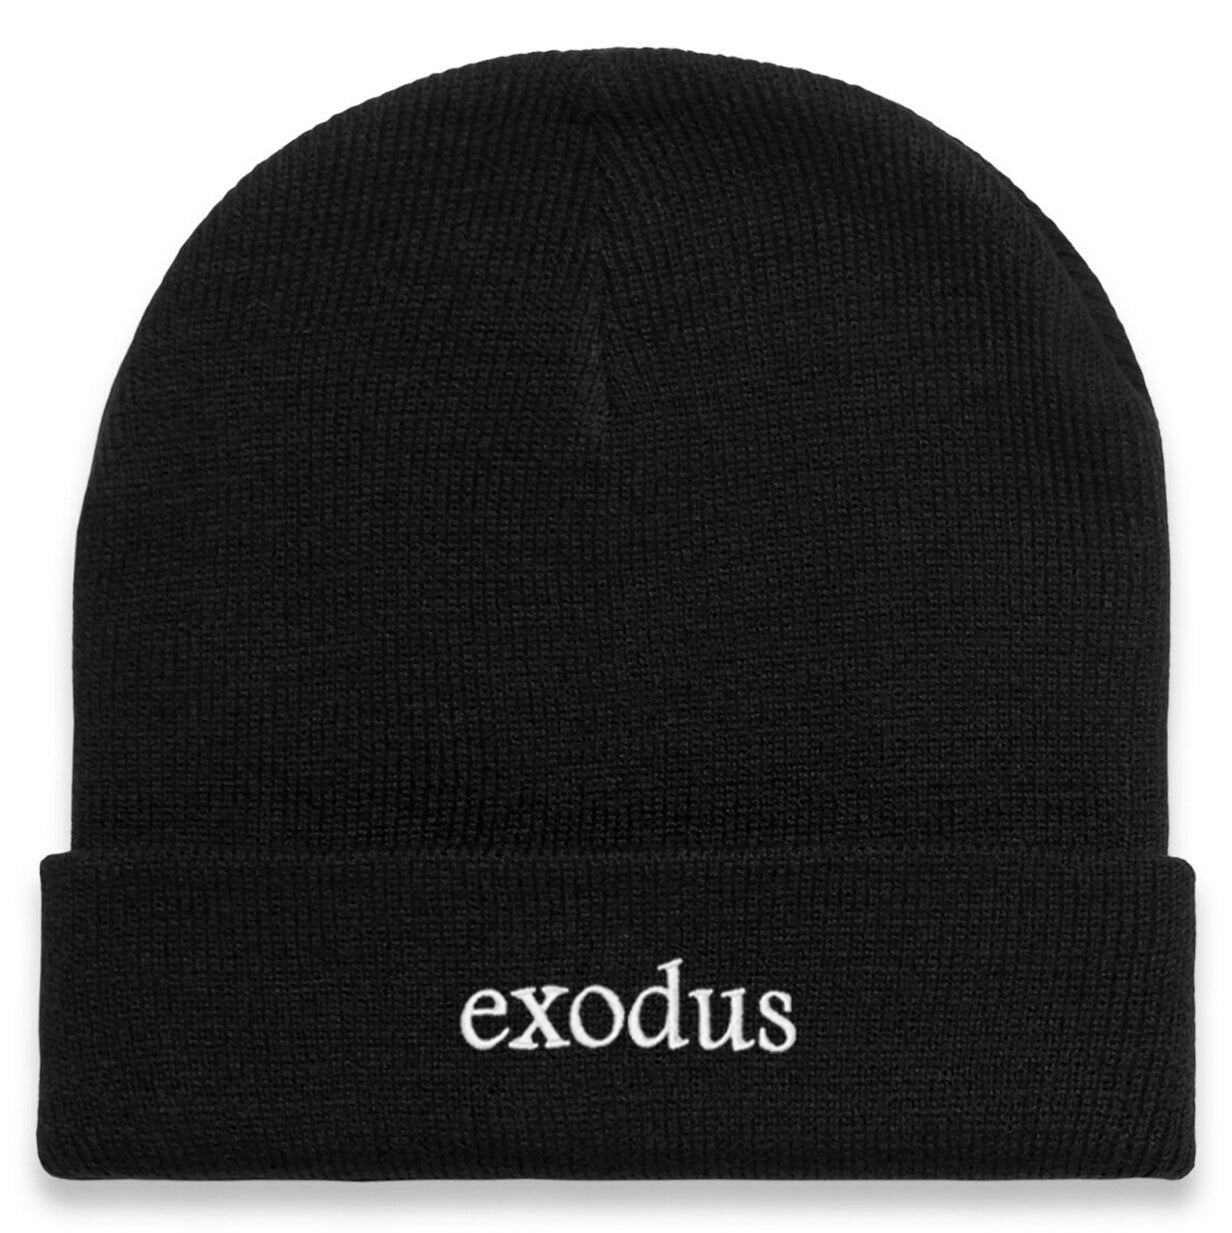 Exodus Clean Cuff Beanie - Black/White